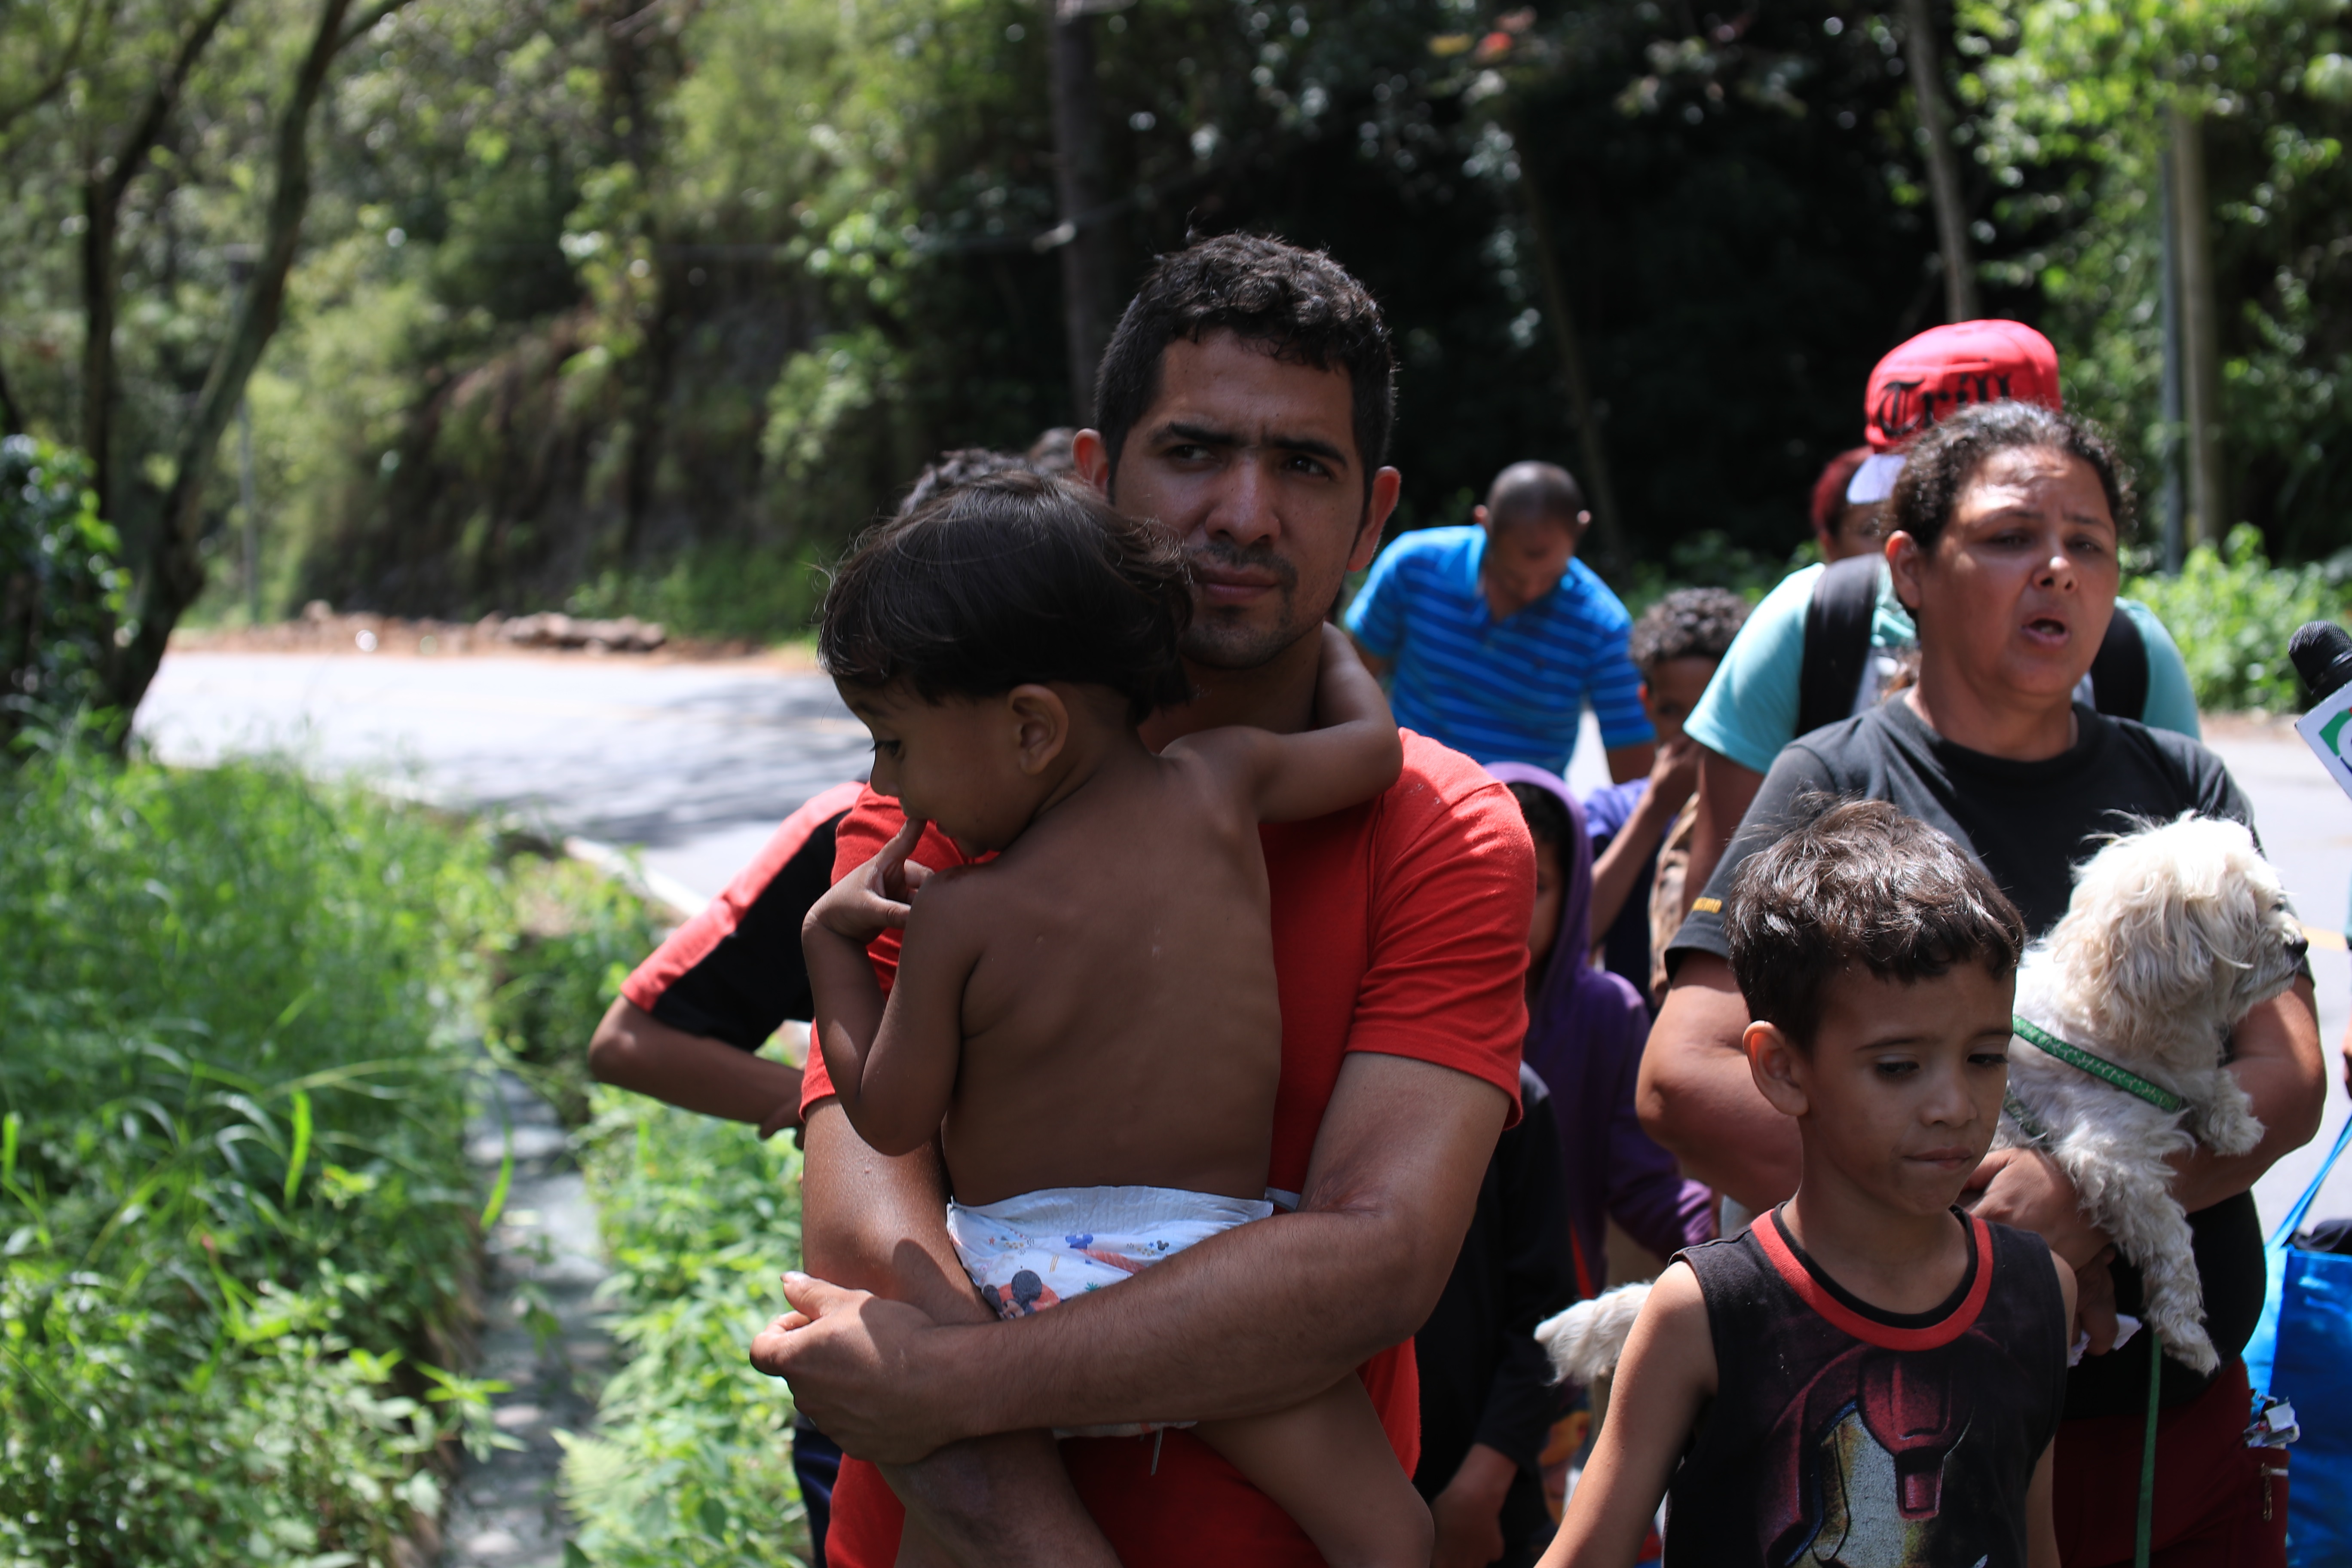 Una familia de venezolanos es captada en una carretera del oriente guatemalteco mientras intentan avanzar hacia la frontera con México. (Foto Prensa Libre: Carlos Hernández)